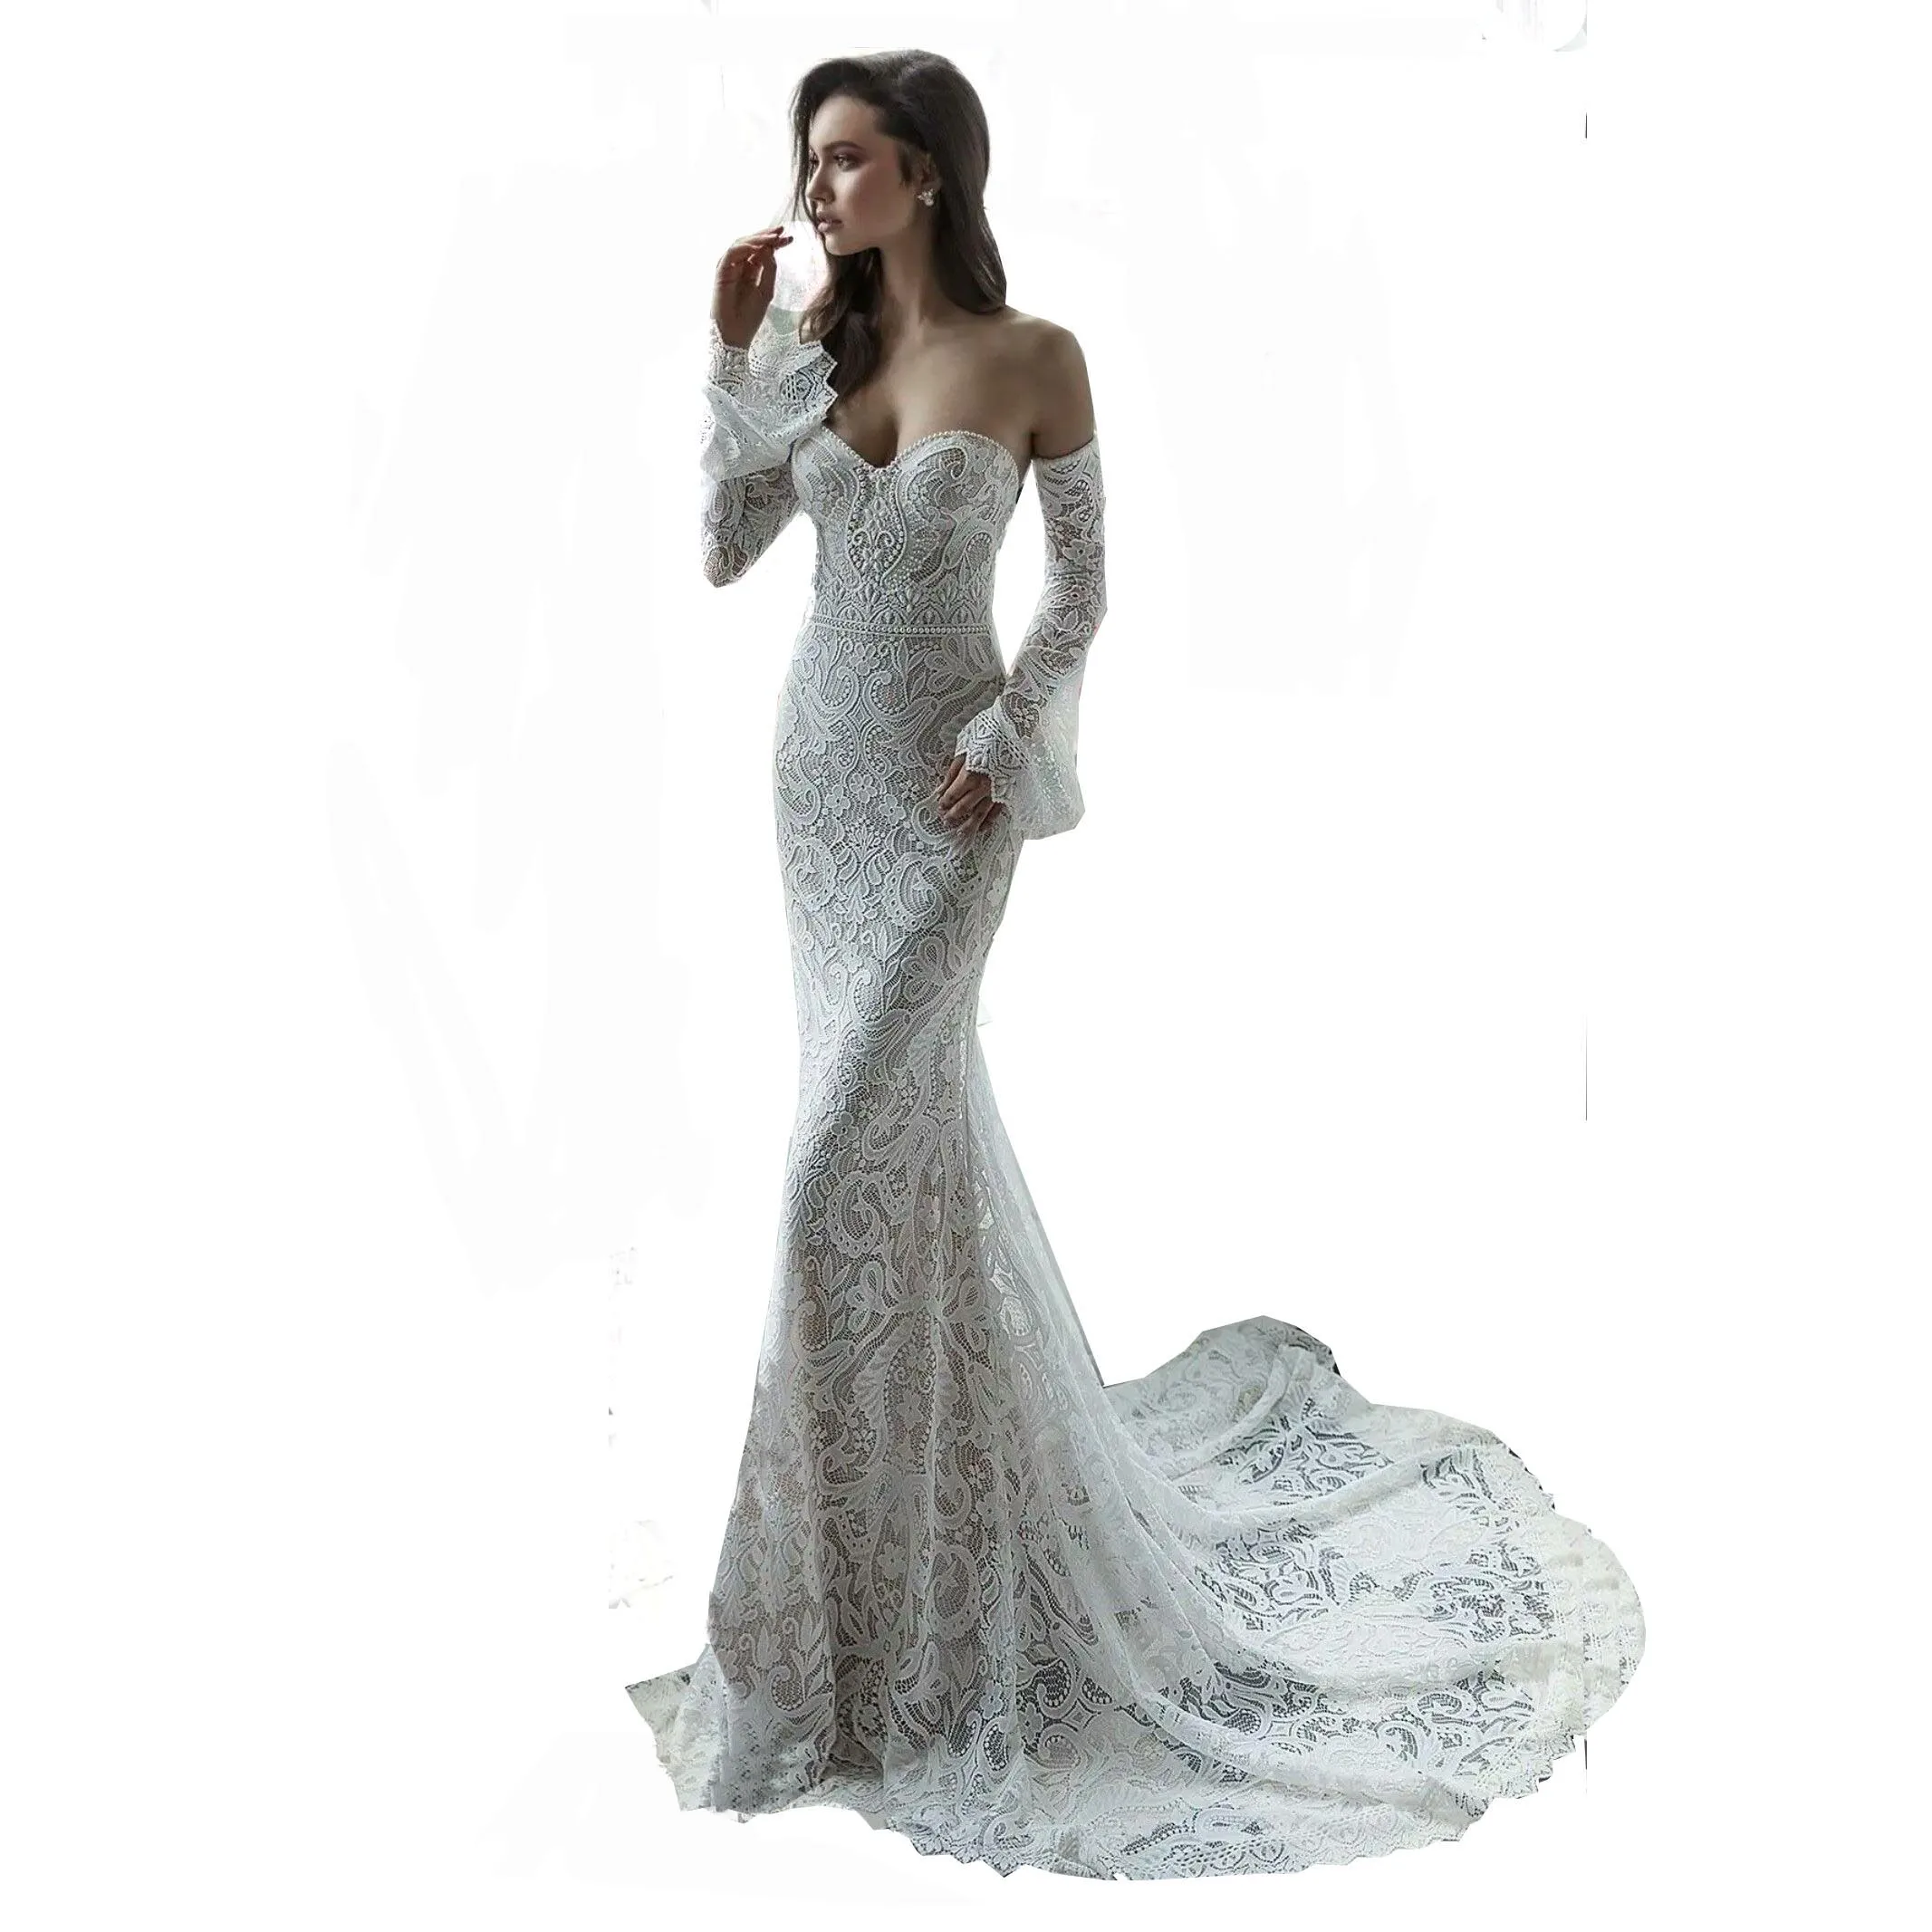 

2019 Vestidos De Novia Apliques New Style Bridal Dress Wedding Dress, White/ ivory